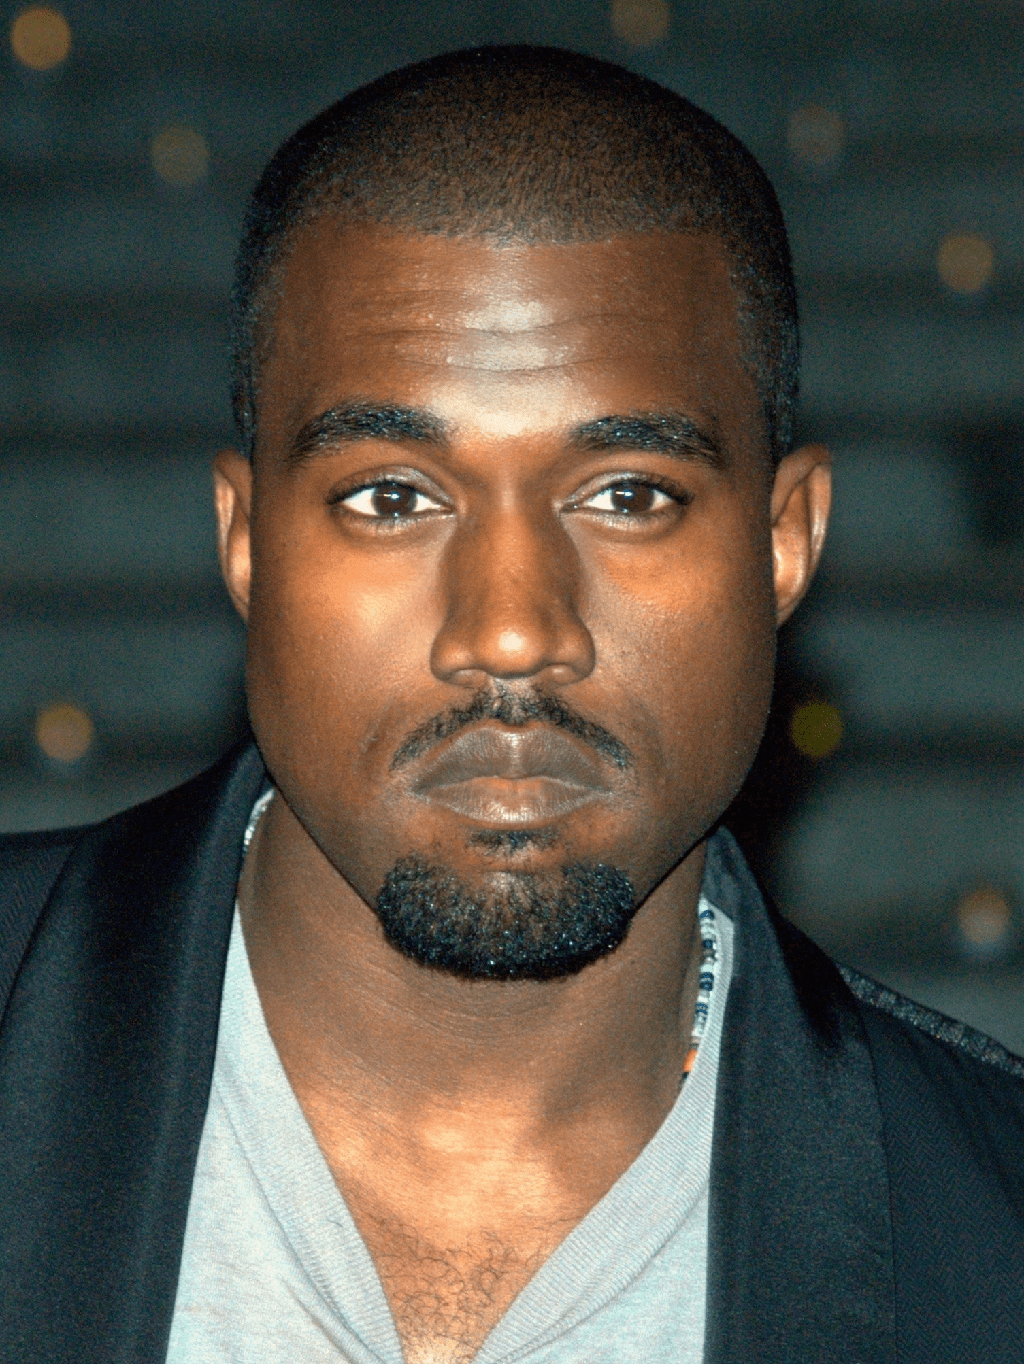 El rapero Kanye West sorprende a los fanáticos después de afeitarte las cejas por completo, debute completamente - 97 - agosto 24, 2022